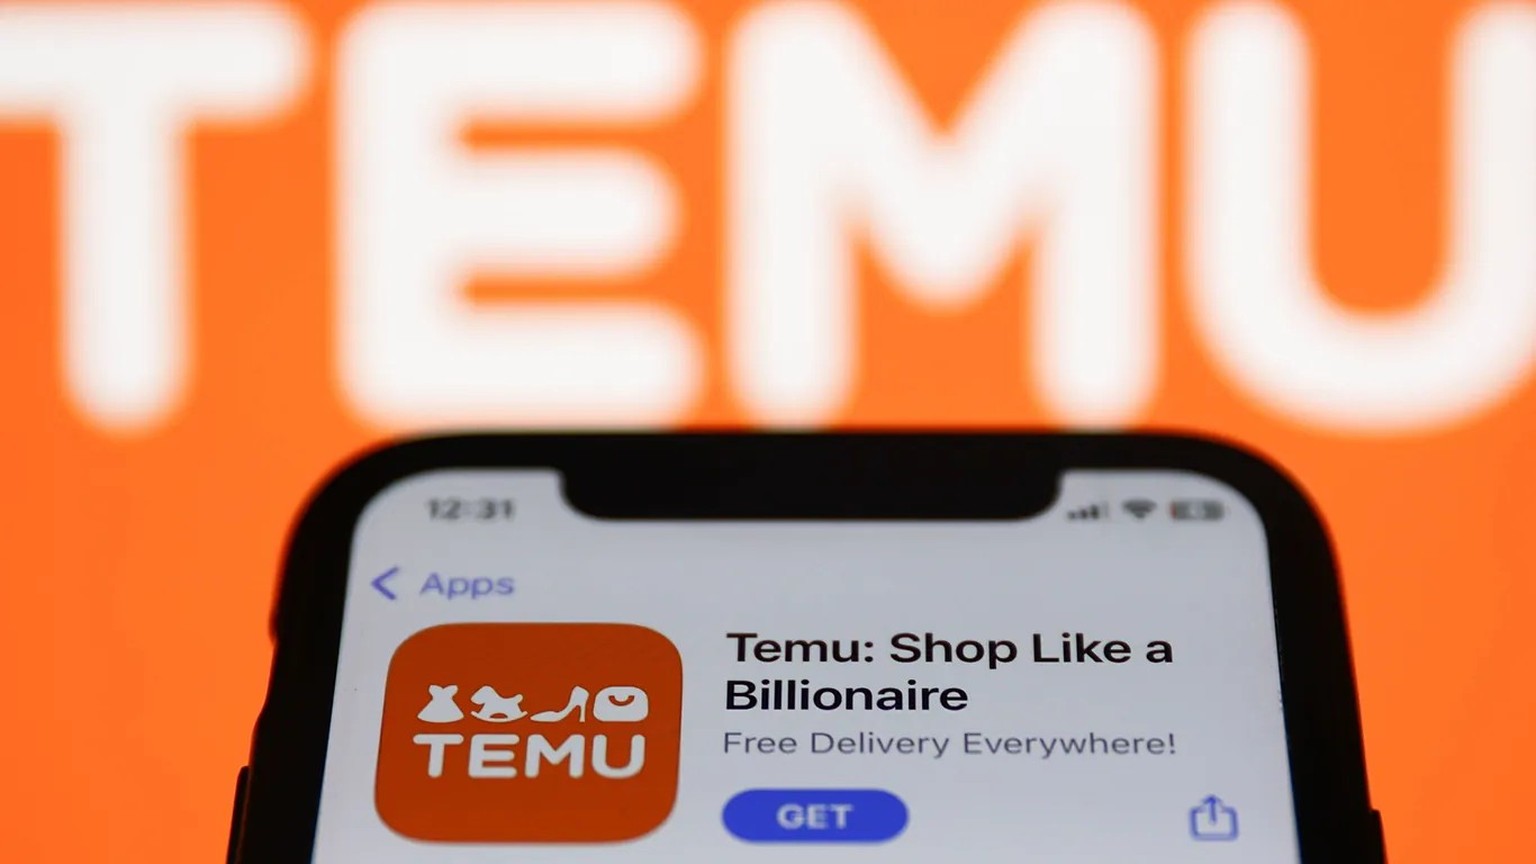 Darum sollte man beim Onlineshop Temu vorsichtig sein